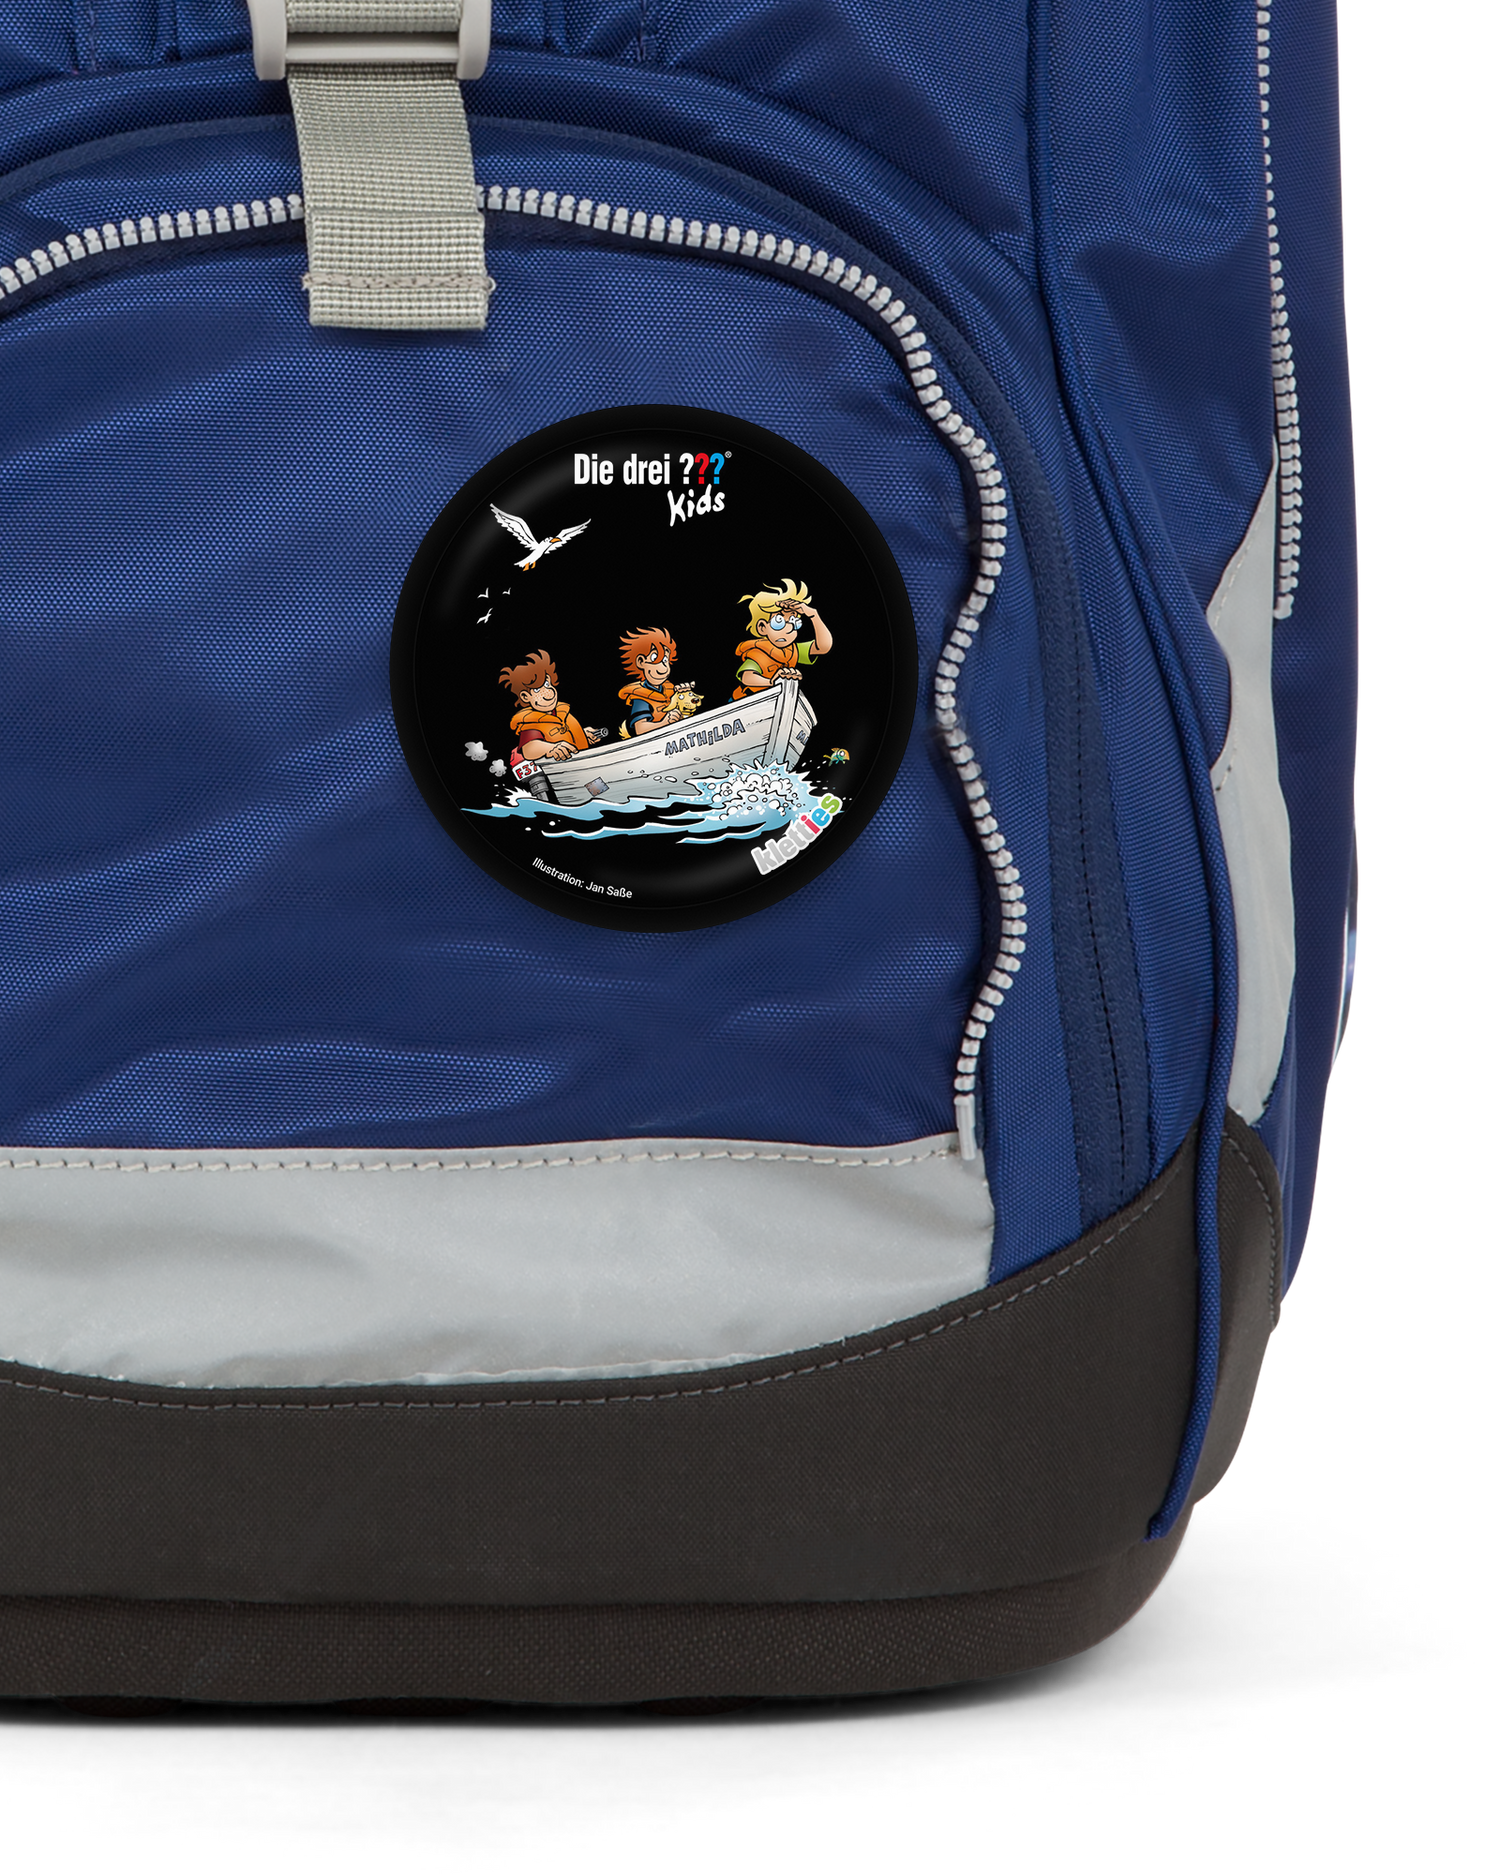 Die Drei Fragezeichen Bootstour Klettie: Detail shot on an ergobag backpack